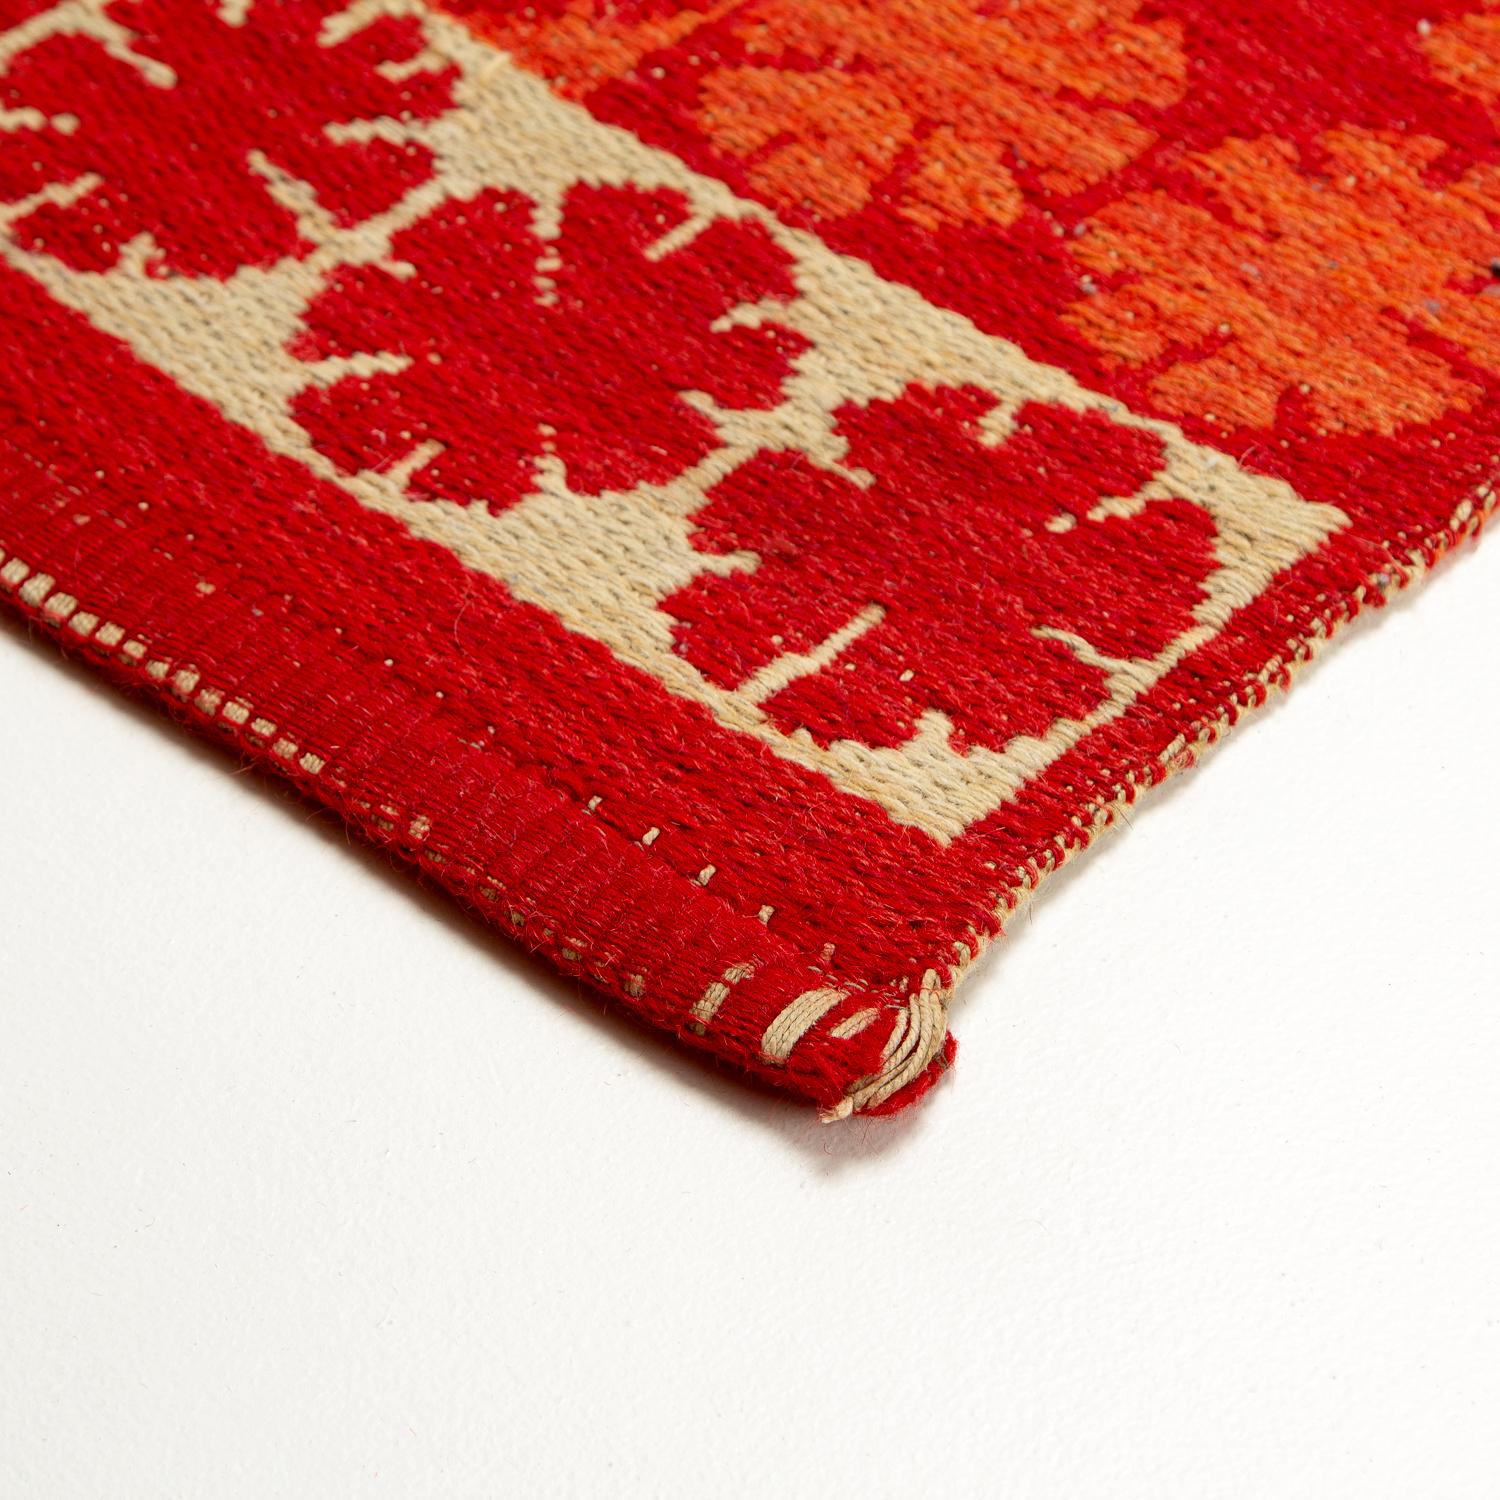 Ingrid Dessau Red Flat Weave Rug, Sweden, 1950s For Sale 1